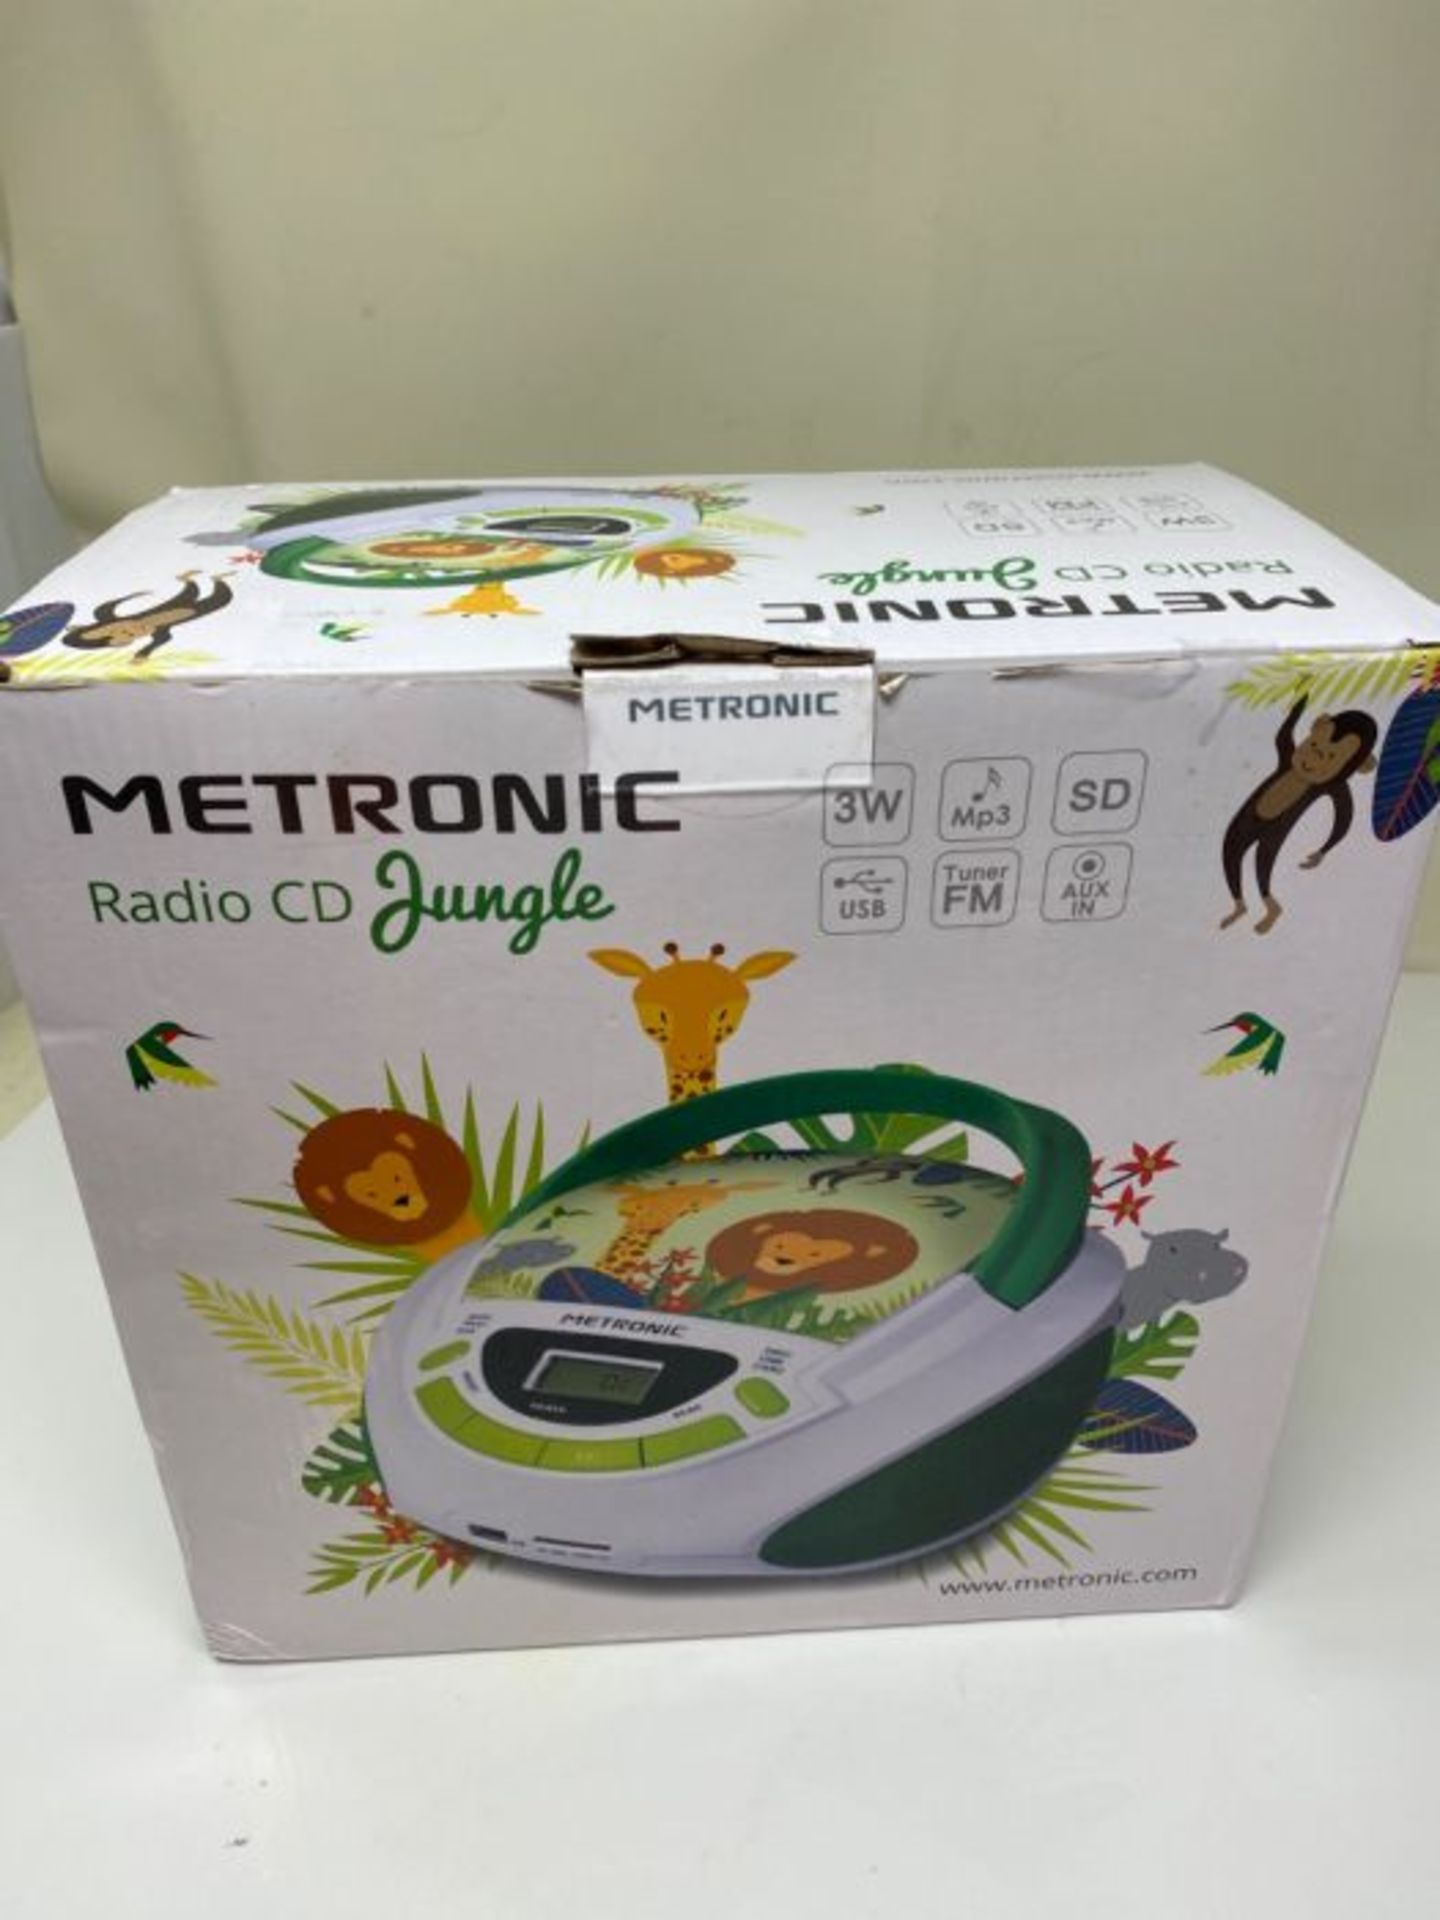 Metronic CD / MP3 Radio green/white - Image 2 of 3